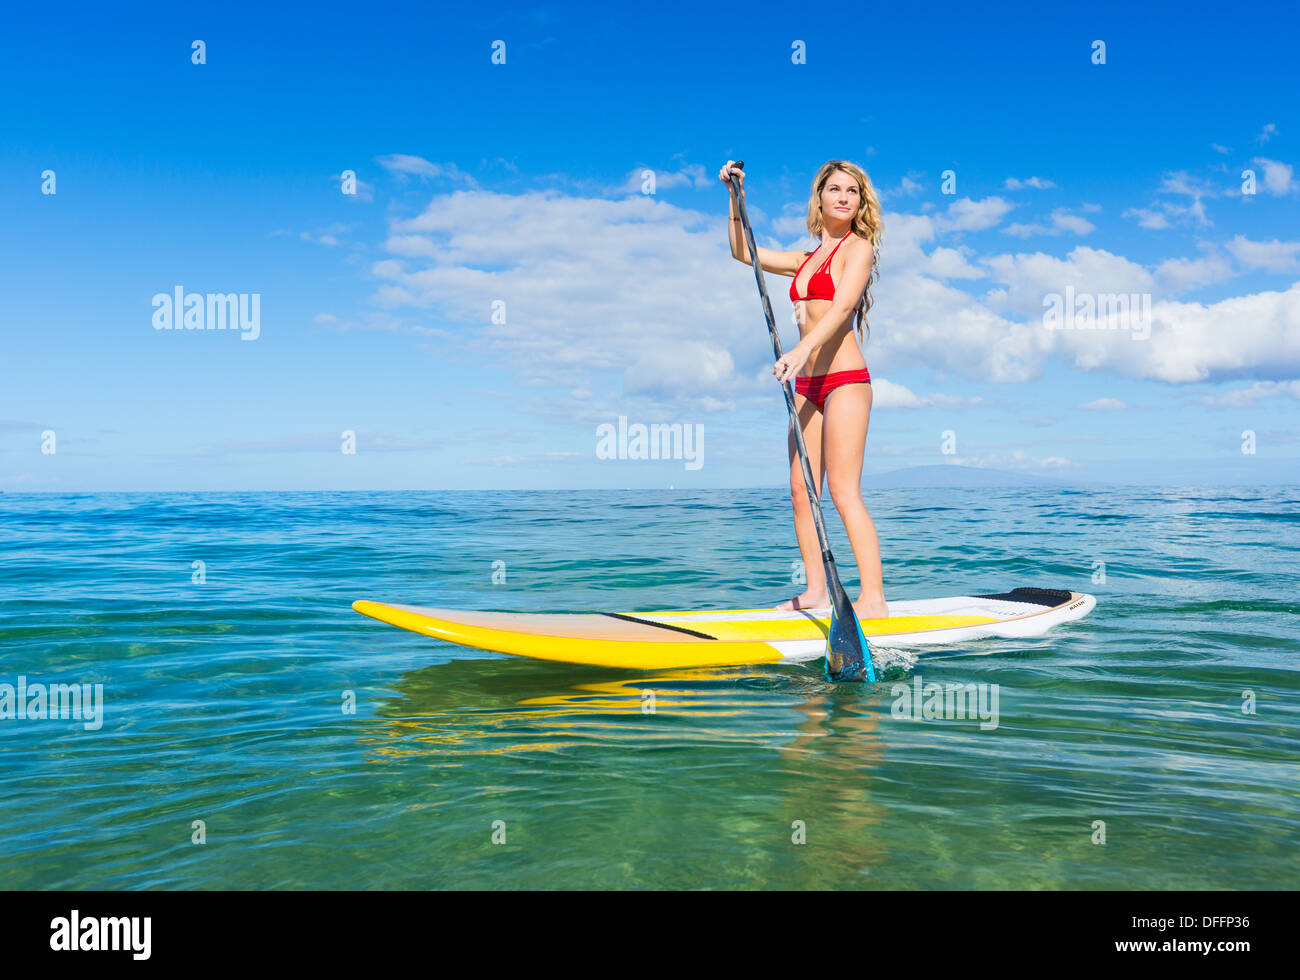 Attraktive junge Frau Stand Up Paddle Surfen In Hawaii, schönen tropischen Ozean aktiv Strand Lebensstil Stockfoto